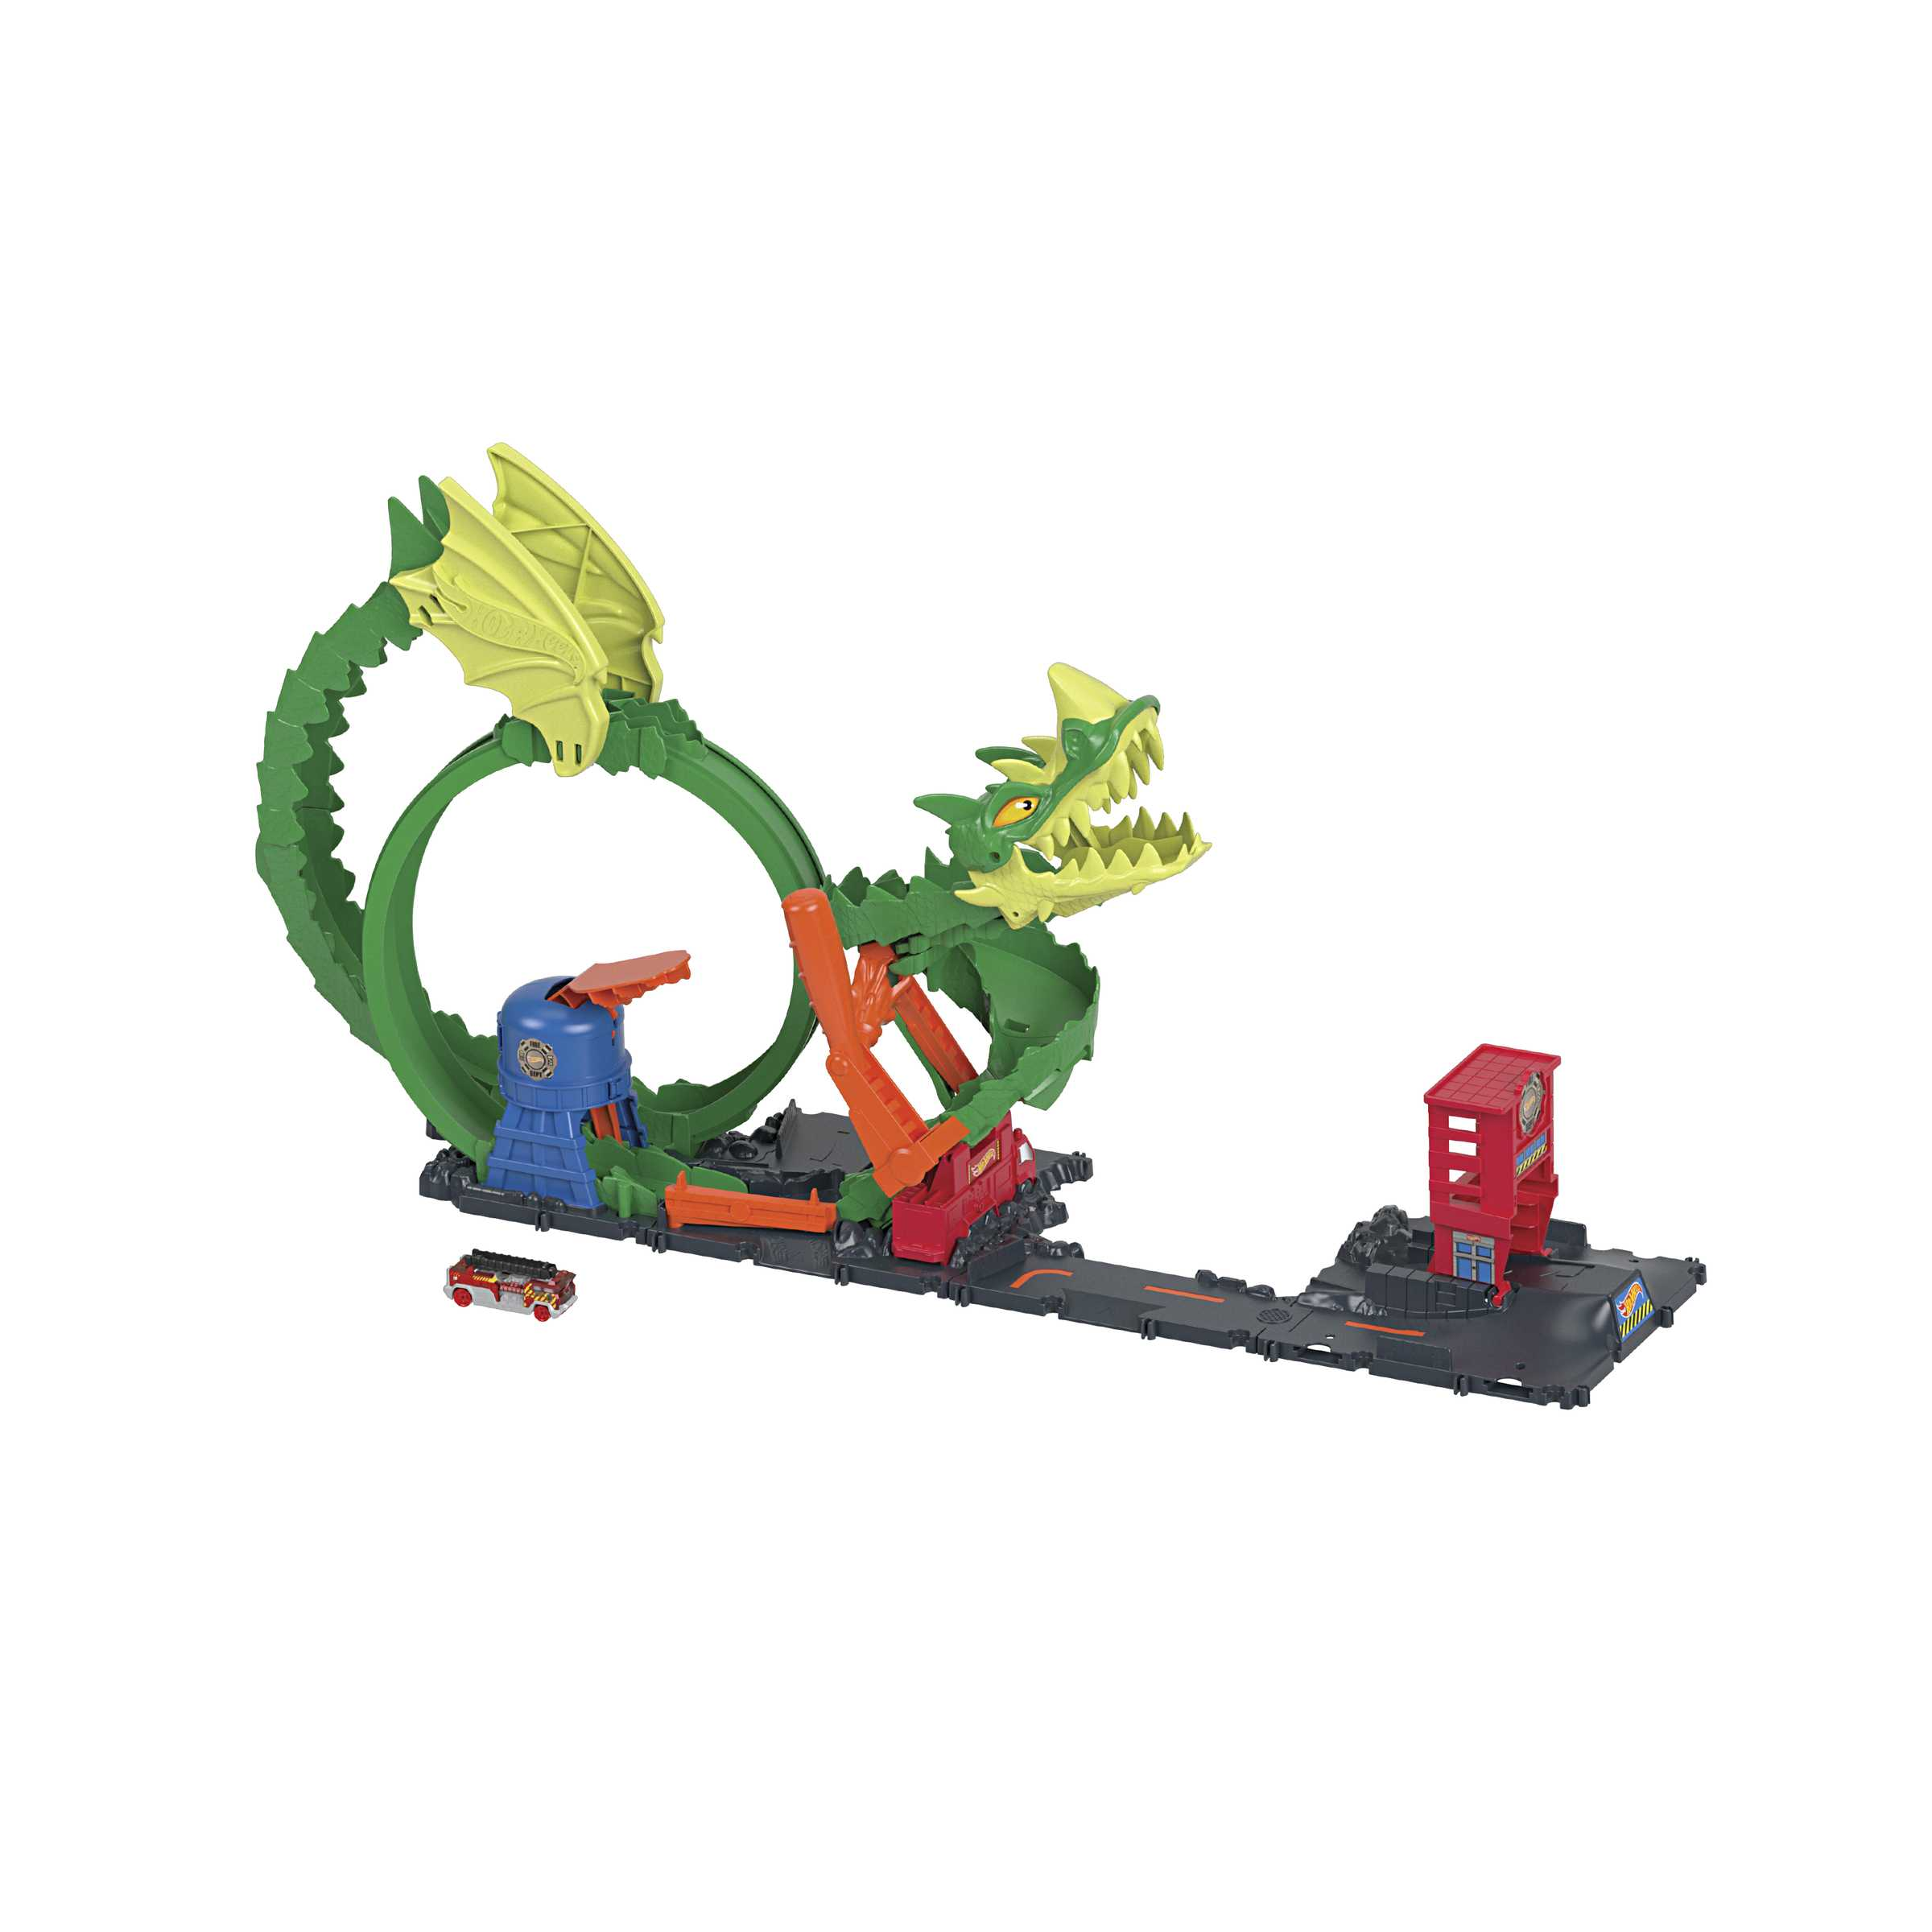 Hot wheels-dragone di fuoco con 1 veicolo die-cast incluso e stazione dei pompieri, giocattolo per bambini 5+ anni, hdp03 - Hot Wheels